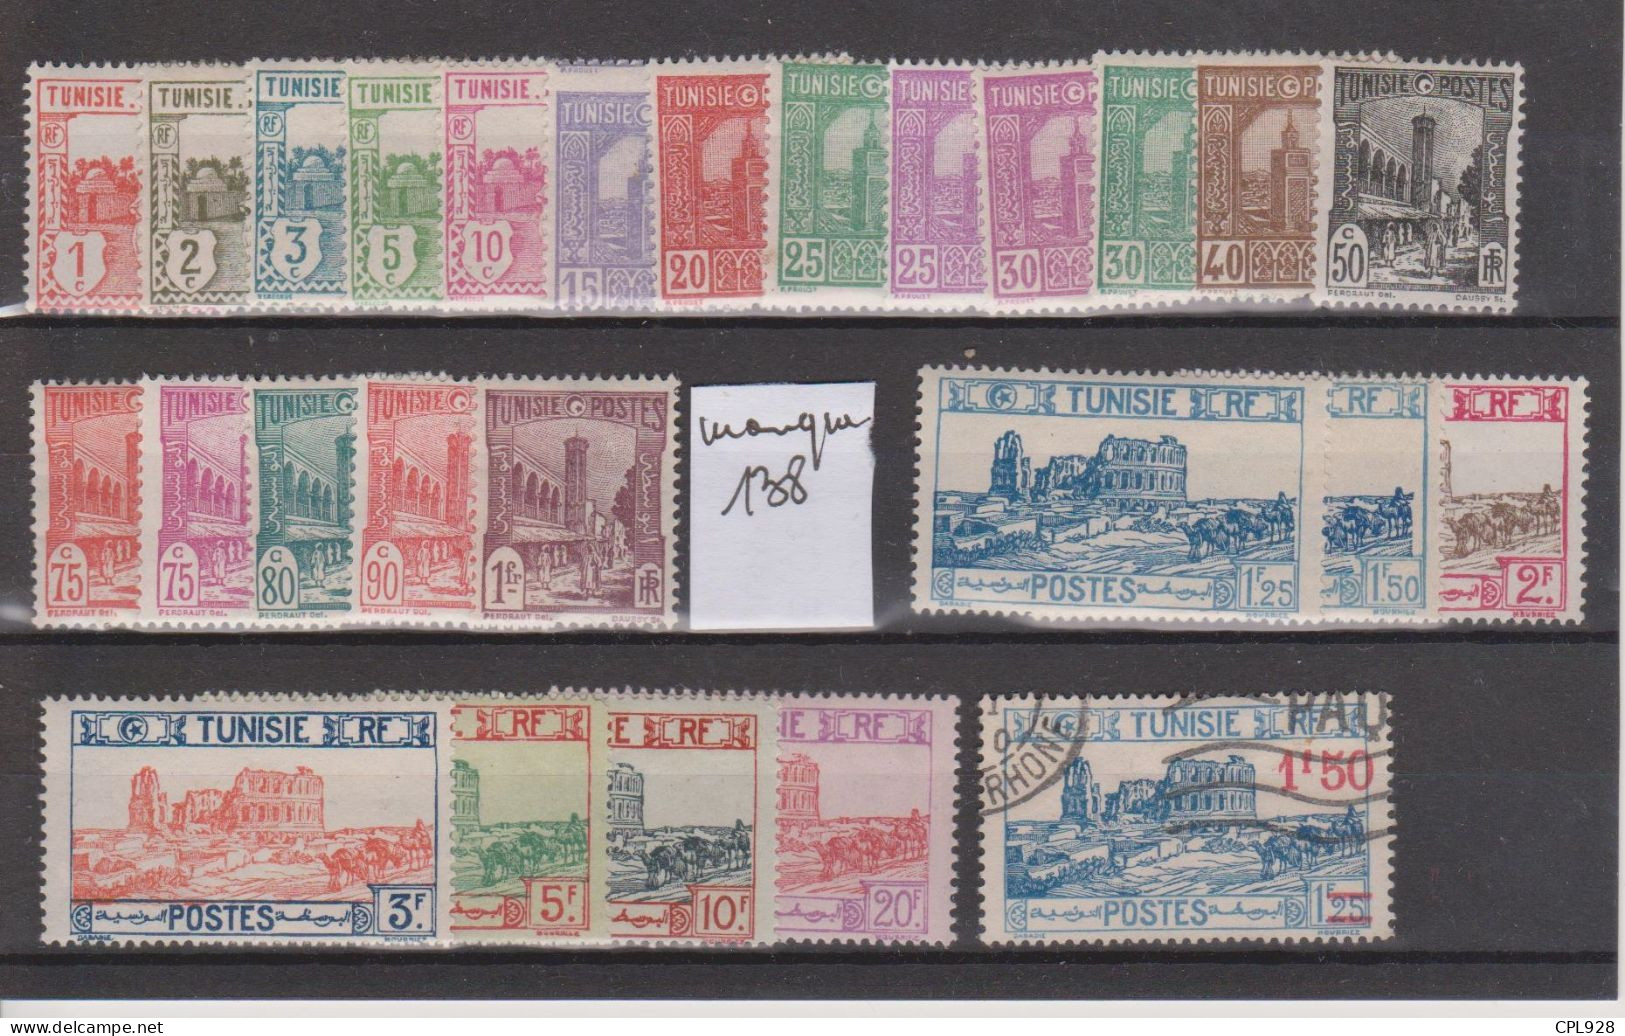 Tunisie N° 120 à 145 Avec Charnières (manque 138) + 146 Oblitéré - Unused Stamps